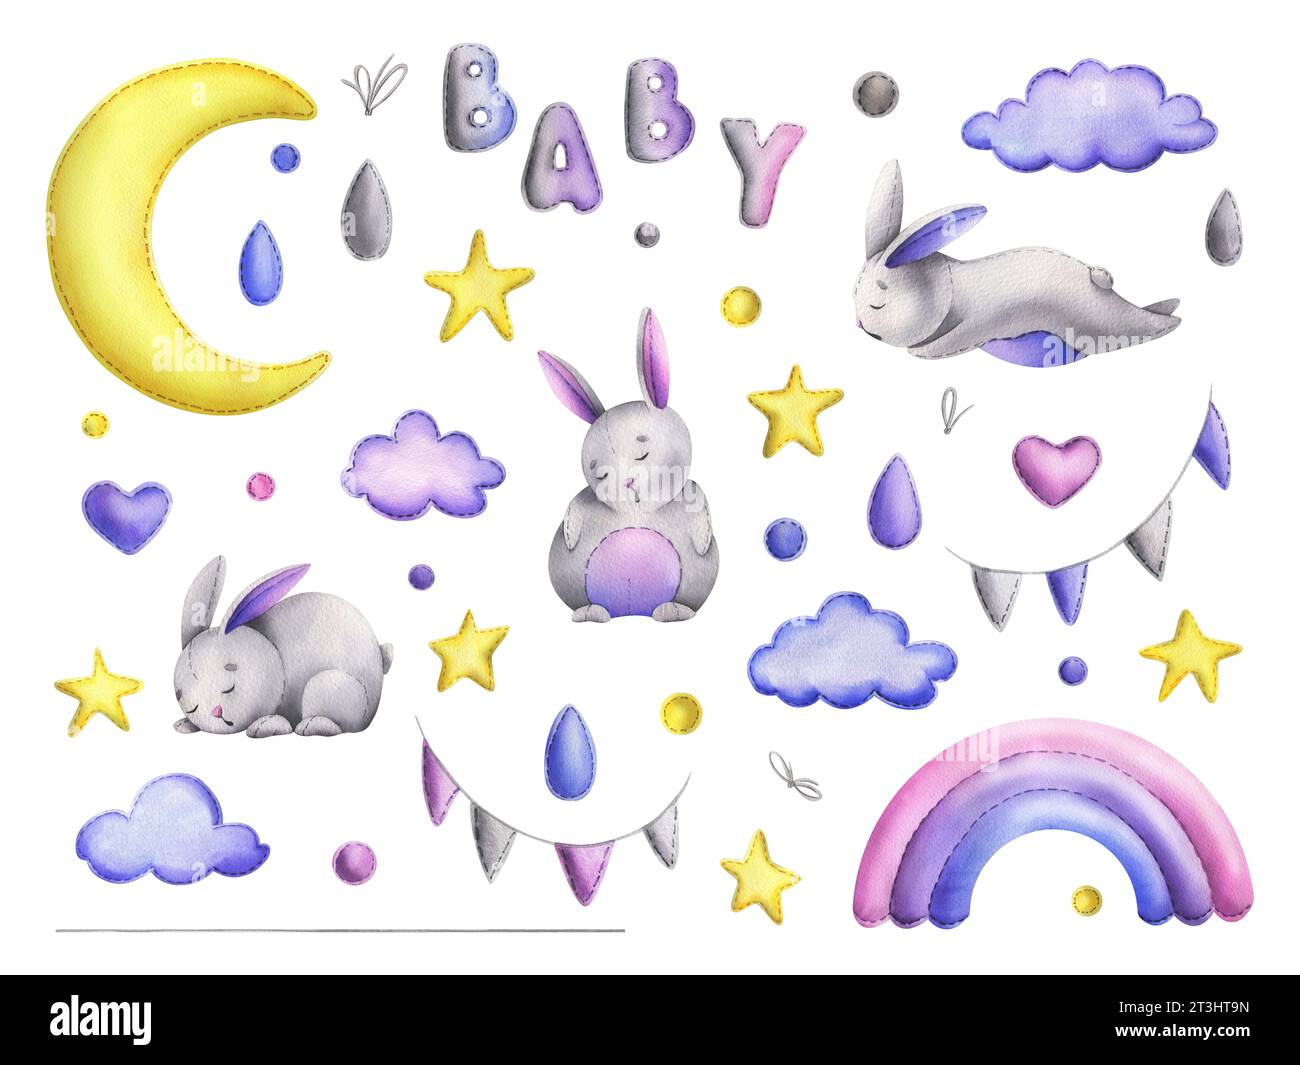 Genähte Stoffhasen mit Mond und Sternen, Regenbogen und Wolken, mit hängenden Dekorationen. Handgezeichnete Aquarellillustration. Satz isolierter Elemente Stockfoto